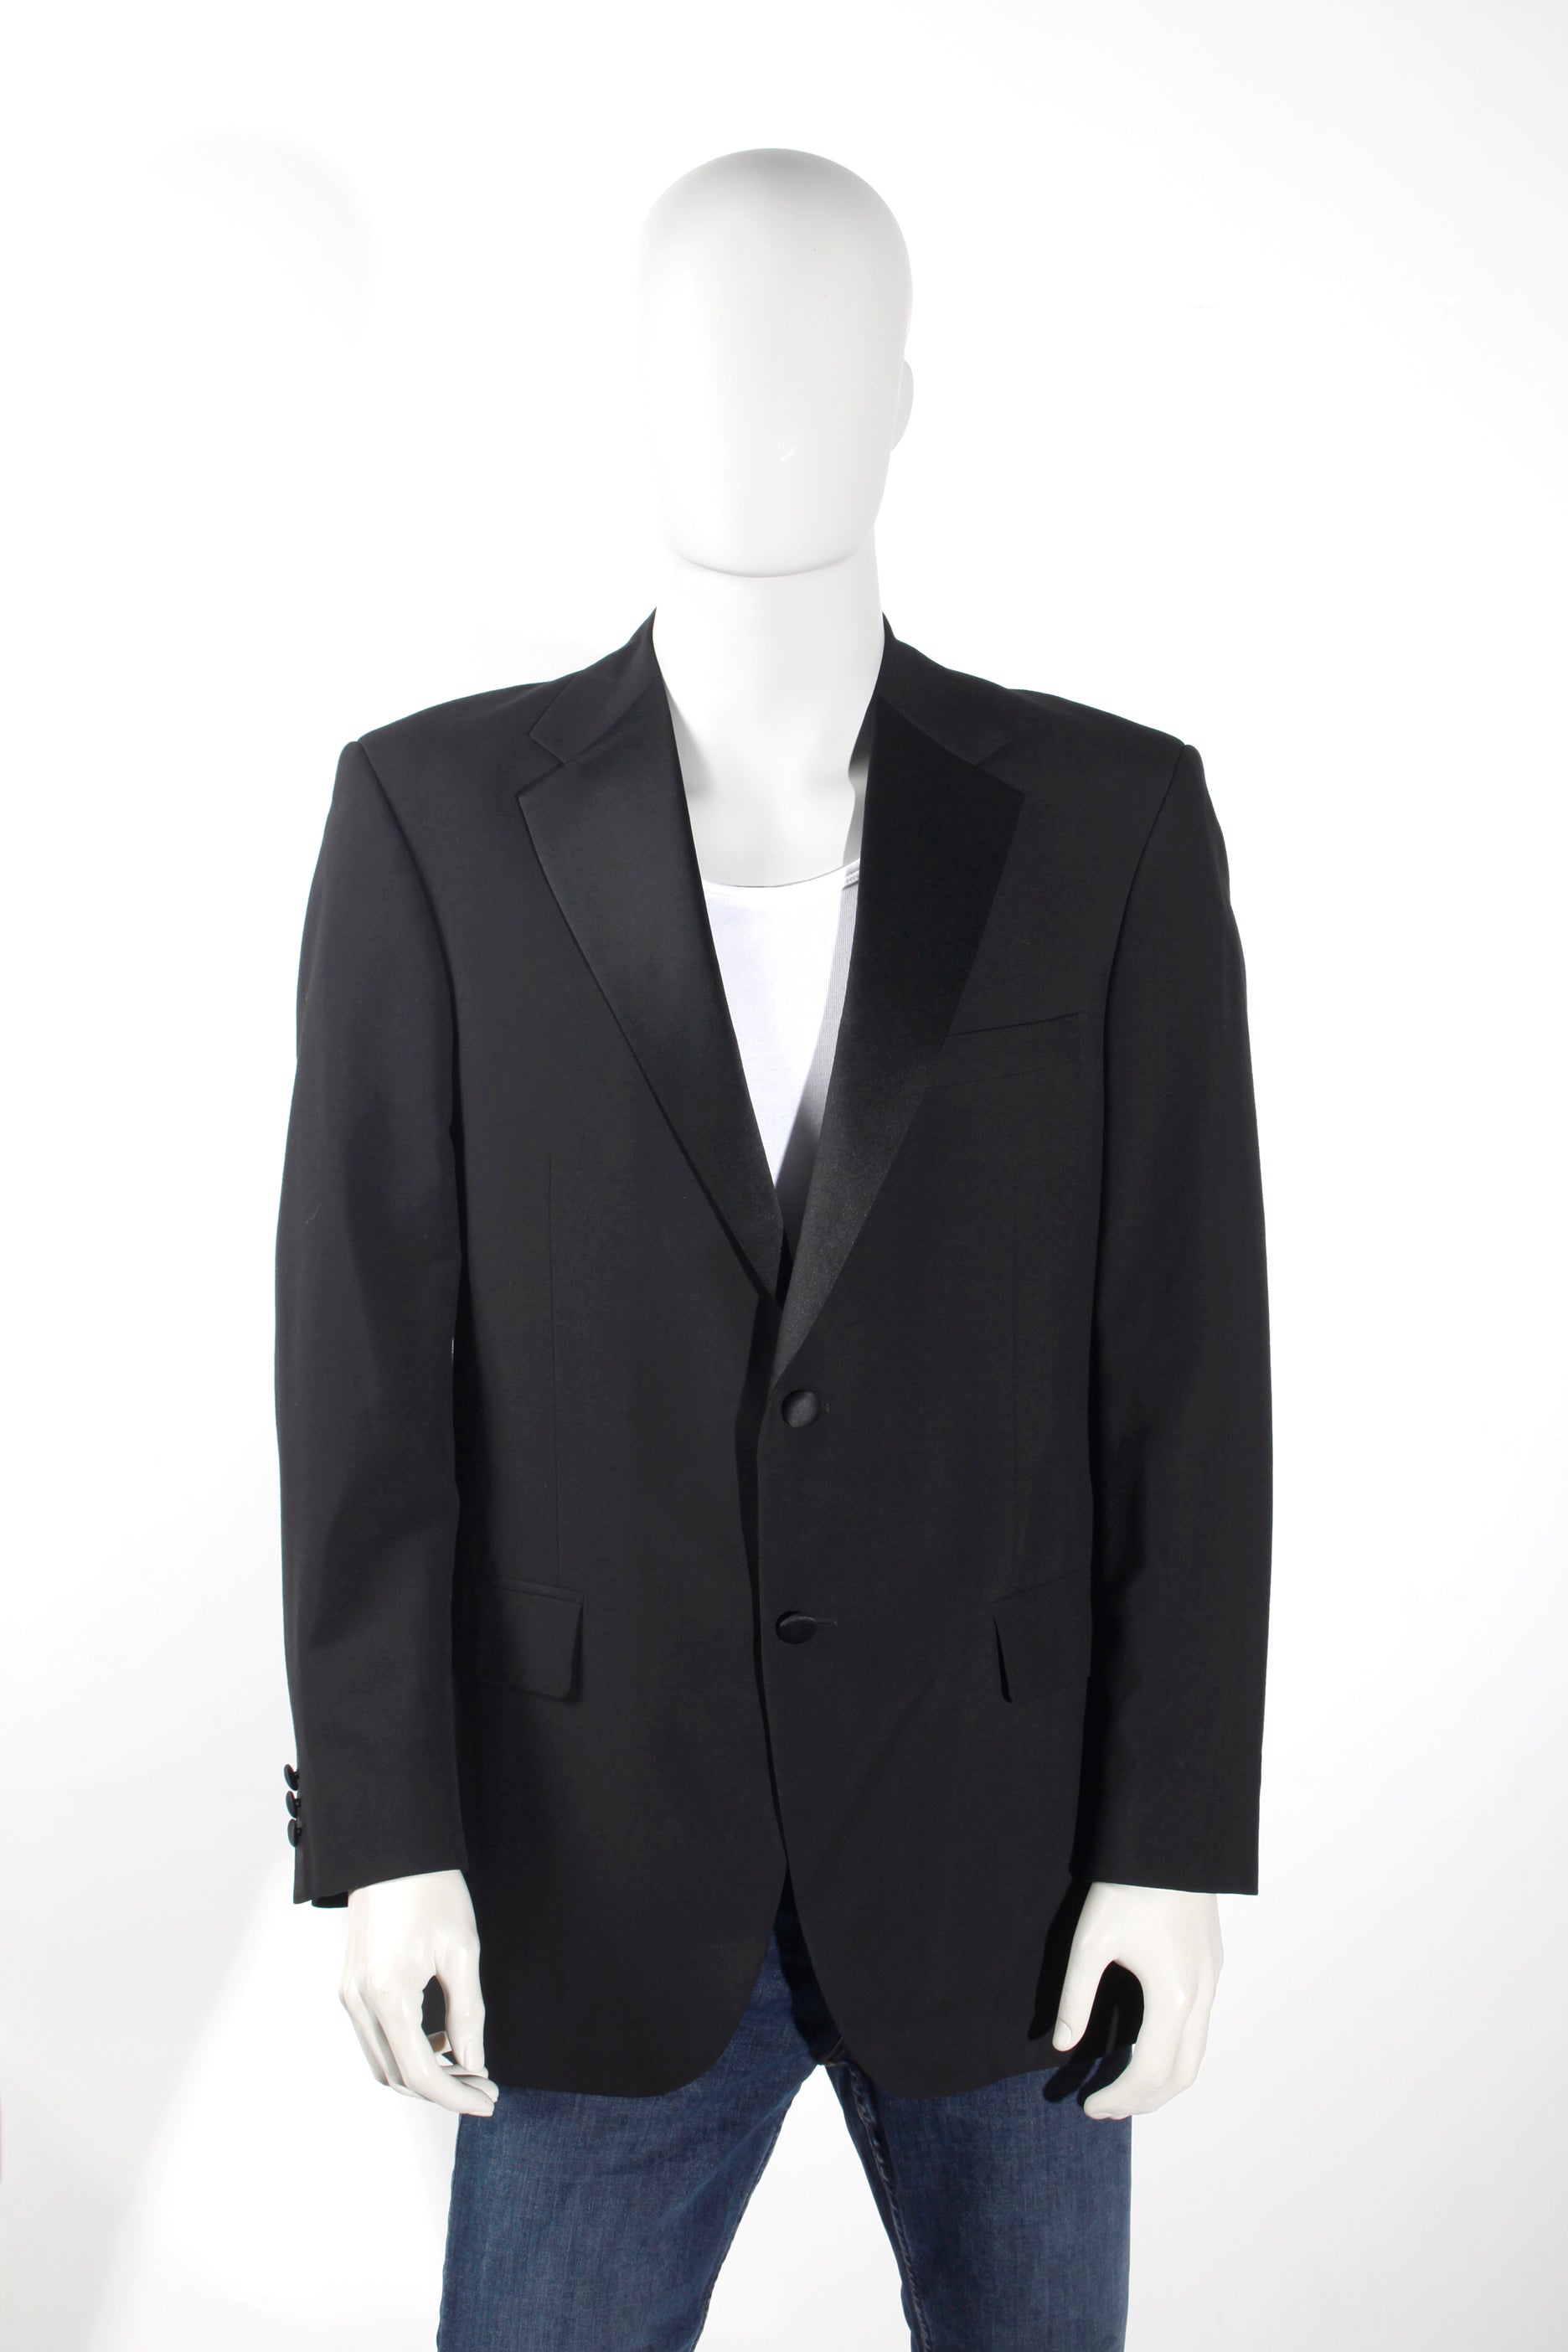 Men's Black Tuxedo Dinner Jacket (Eu52)